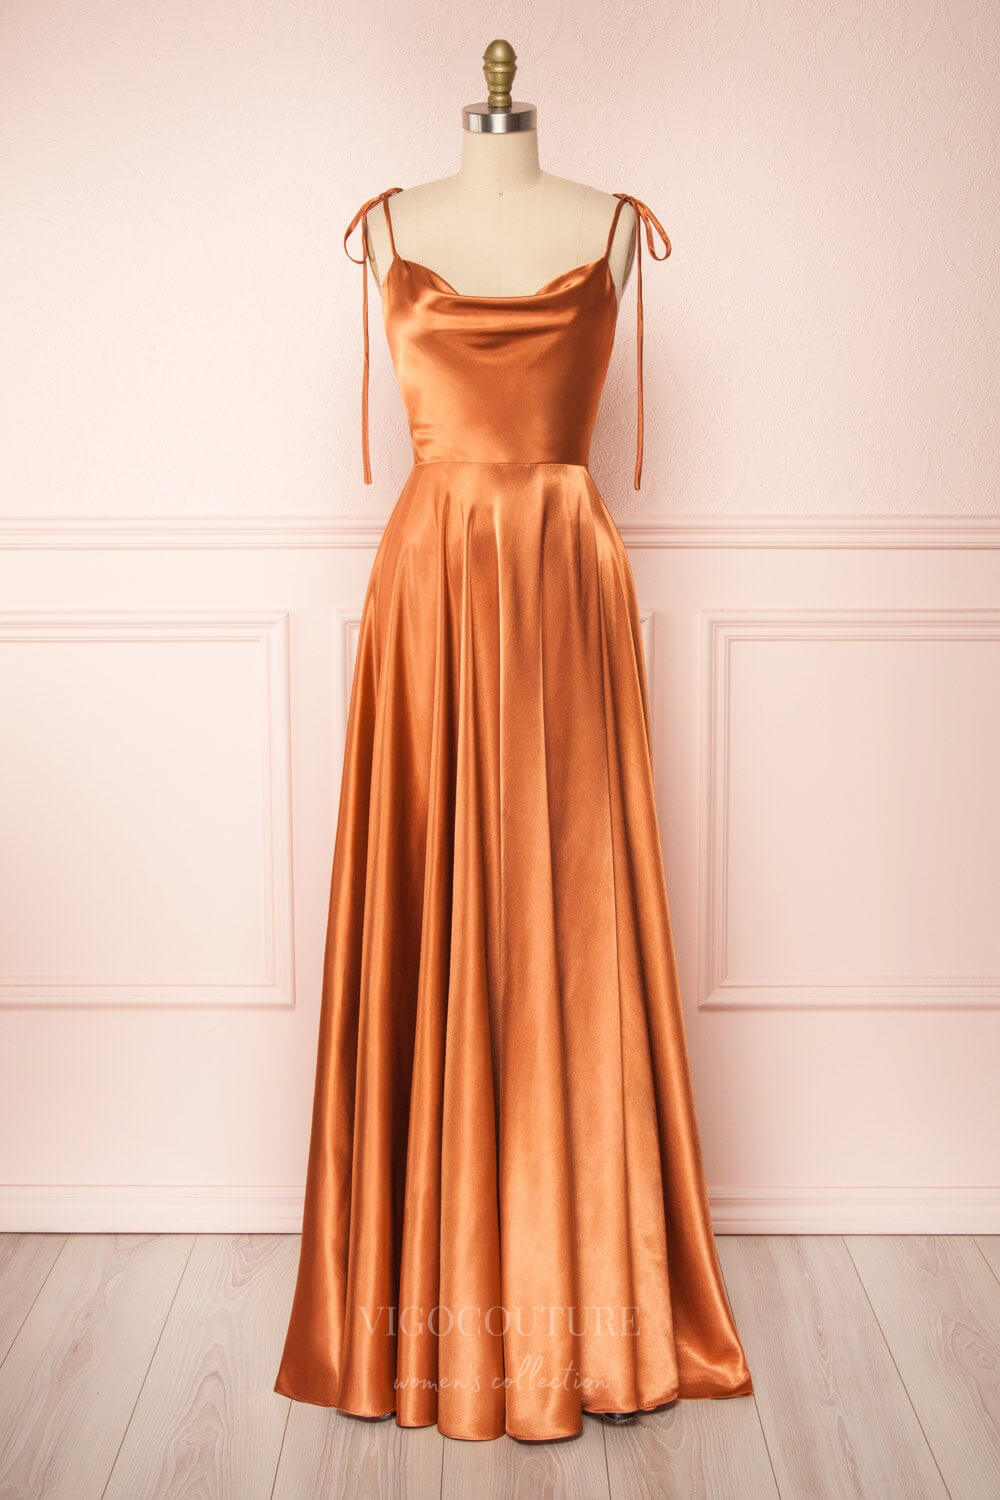 vigocouture-Blue Spaghetti Strap Prom Dress 20579-Prom Dresses-vigocouture-Orange-US2-